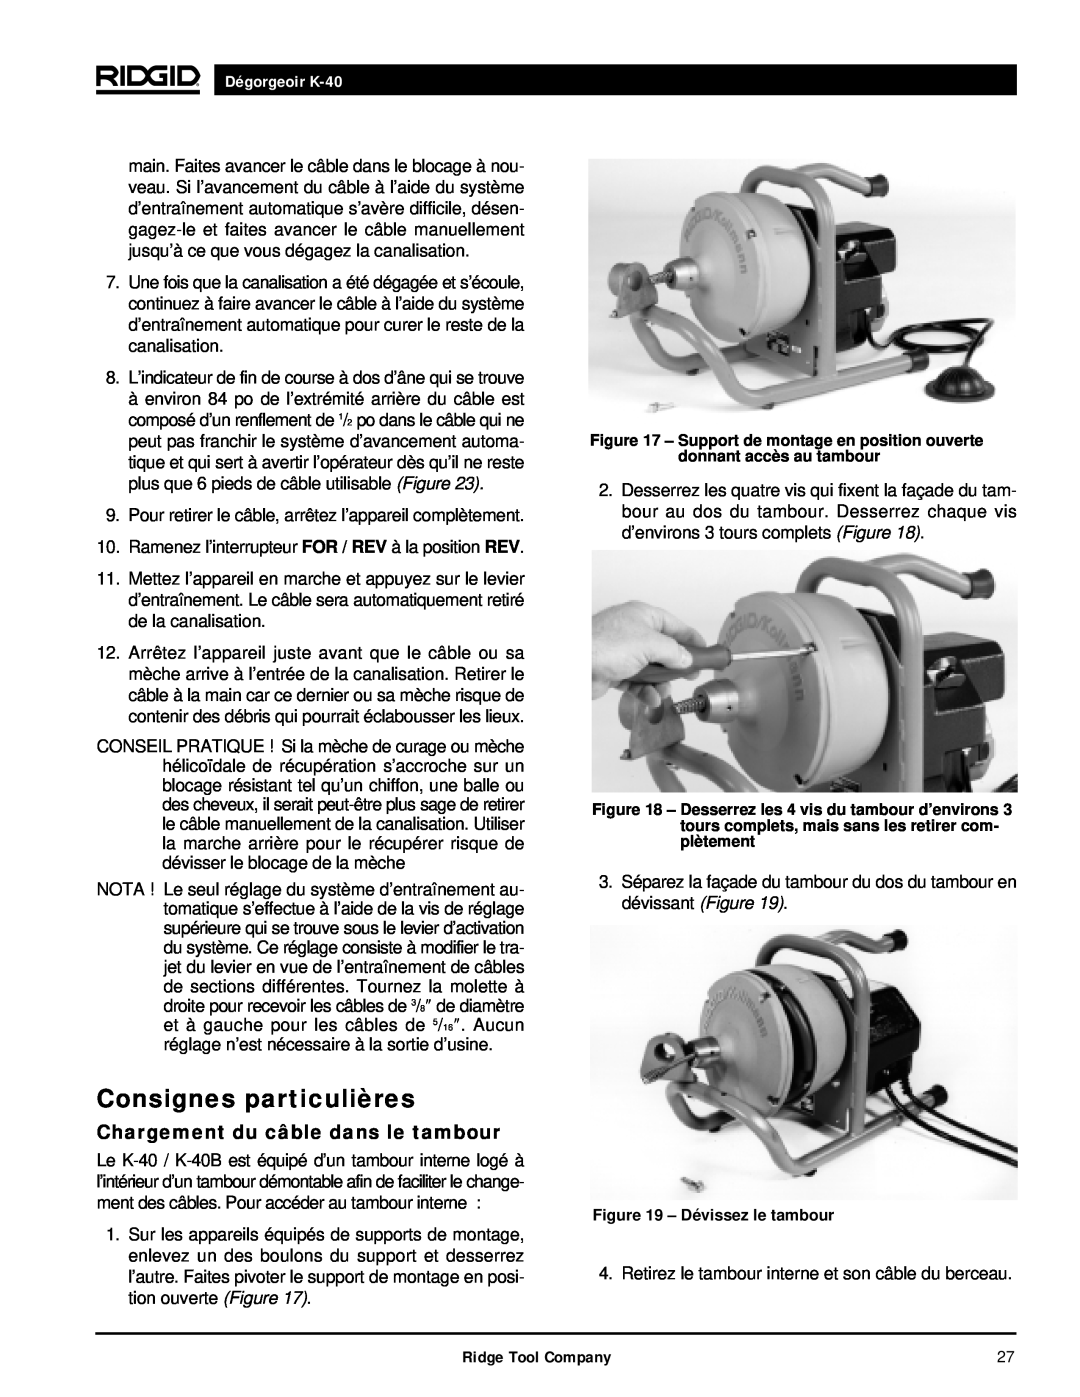 RIDGID K-40G PF, K-40B manual Consignes particulières, Chargement du câble dans le tambour, Dégorgeoir K-40 